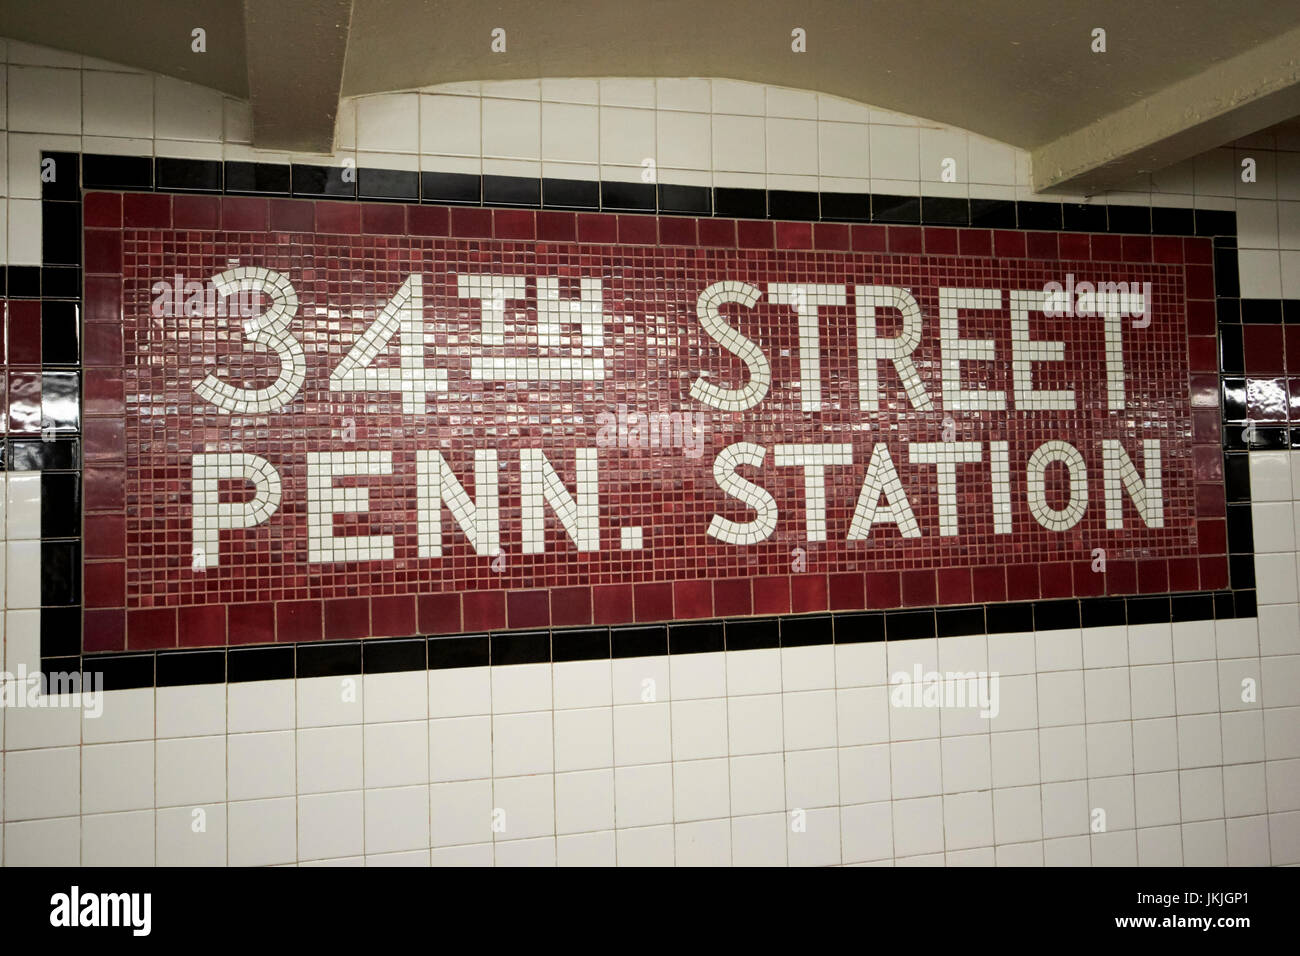 Mosaico in stile vecchia stazione della metropolitana segno 34th street stazione Penn di New York City STATI UNITI D'AMERICA Foto Stock